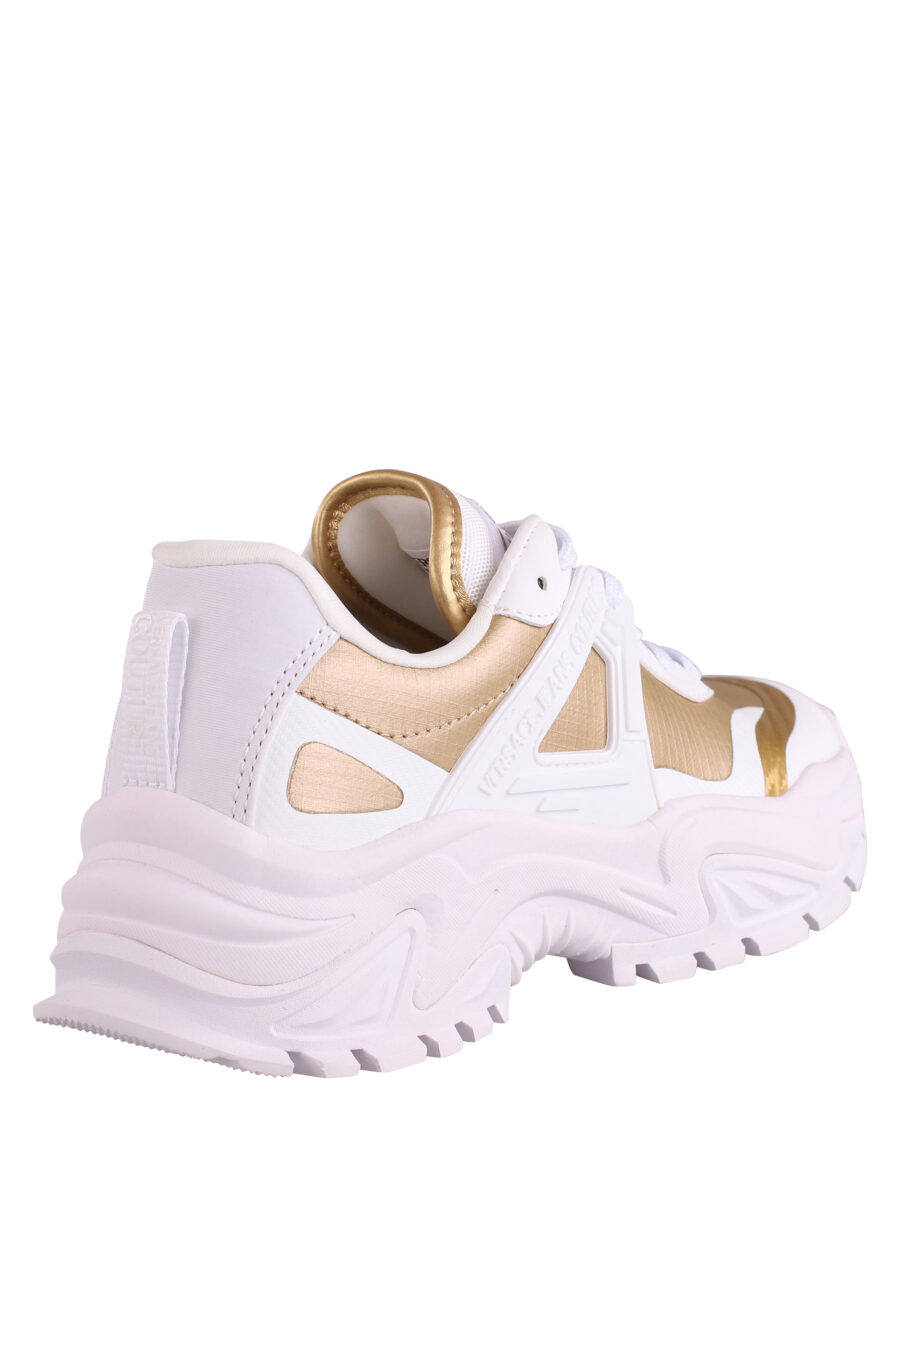 Zapatillas blancas con dorado y logo - IMG 9021